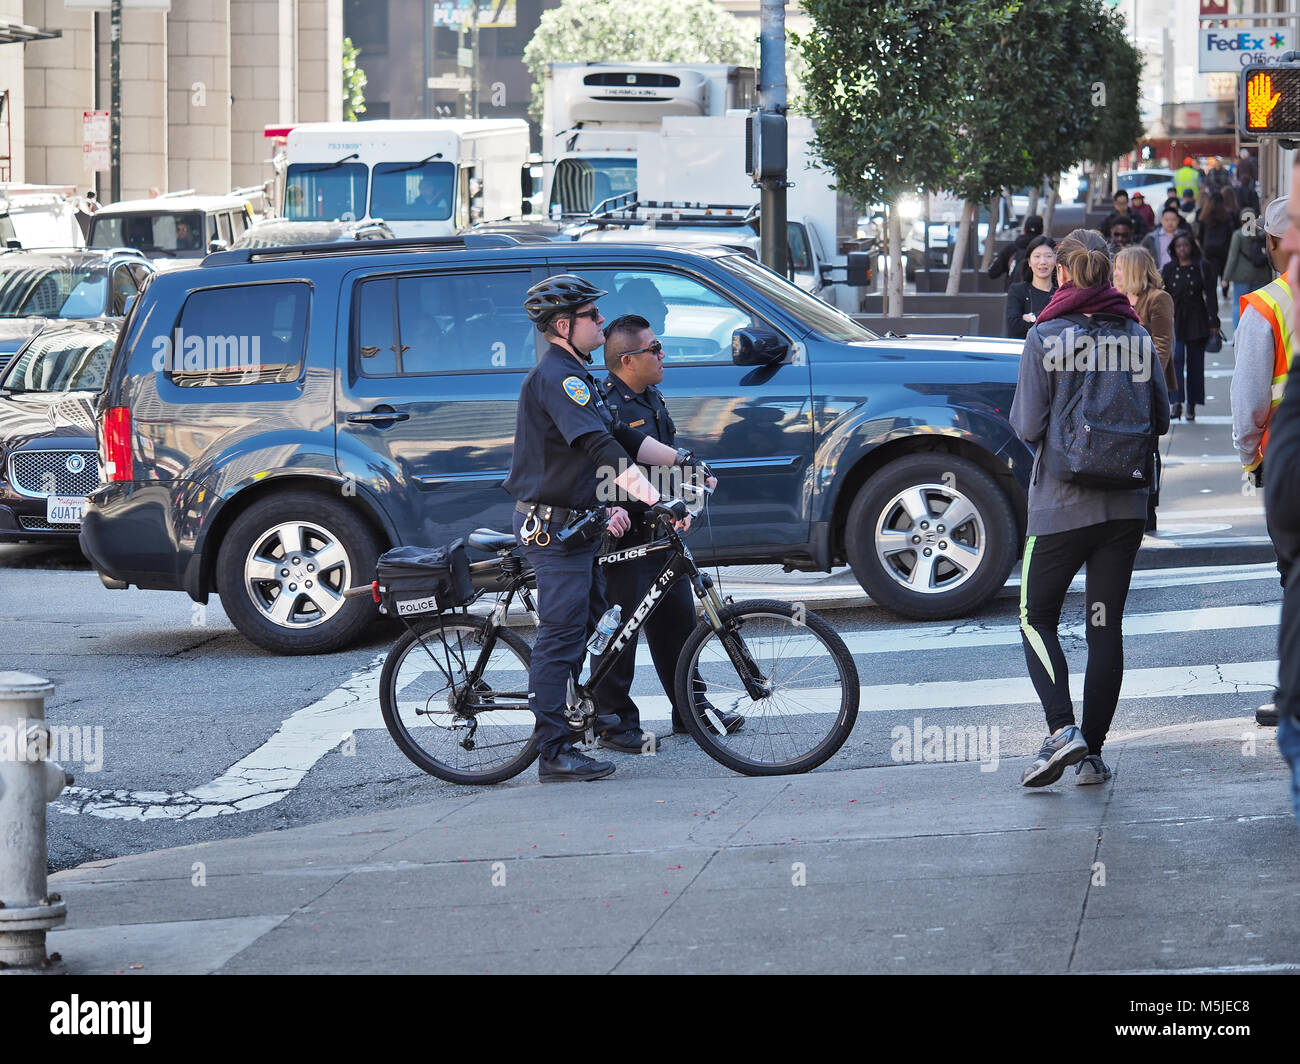 Dos oficiales del departamento de policía de San Francisco (uno en una bicicleta) sobre una calle, febrero de 2018 Foto de stock